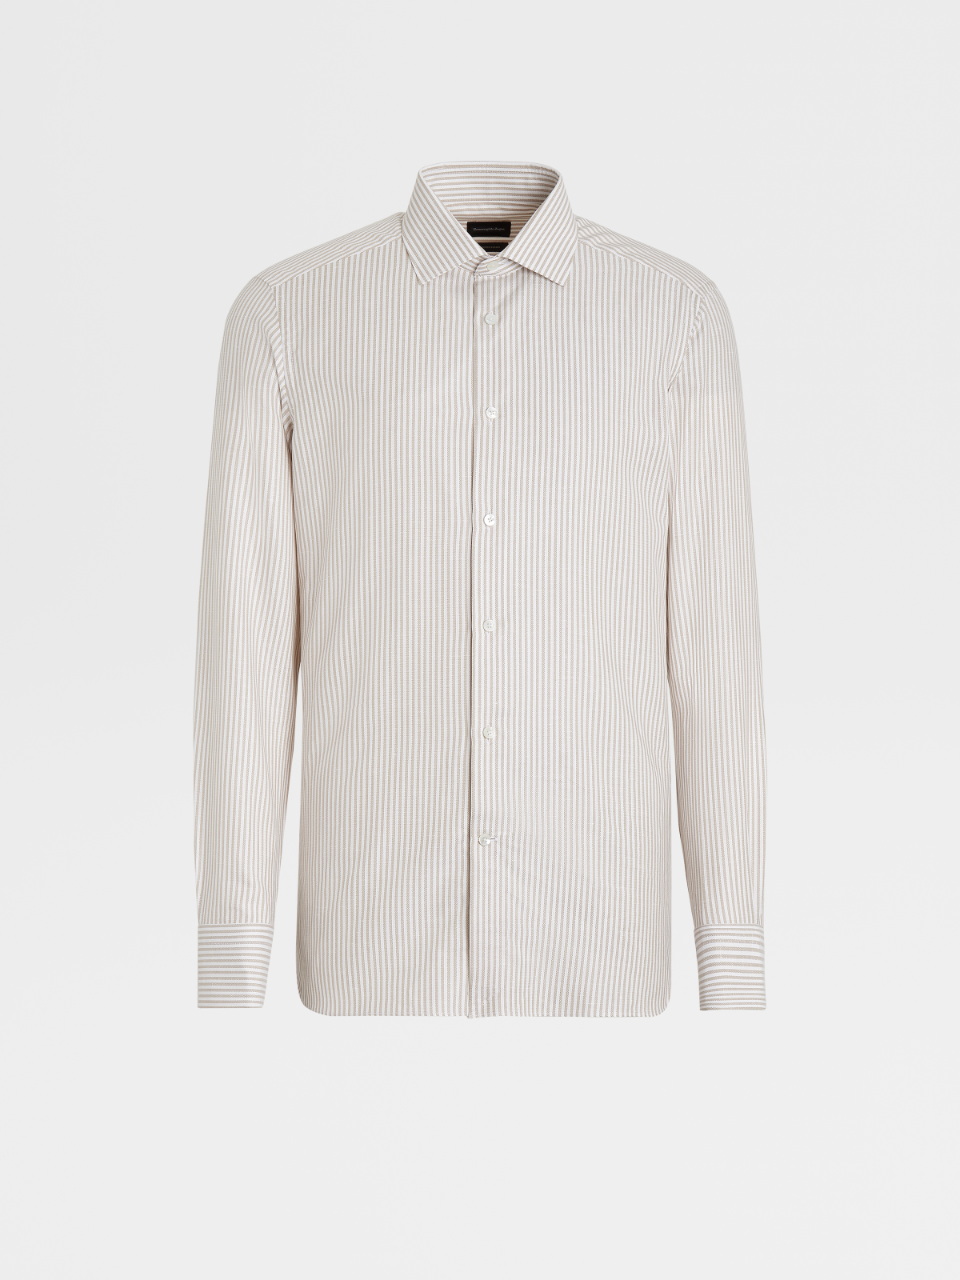 白色条纹 Crossover 棉质亚麻及桑蚕丝混纺精裁衬衫，Milano 合身版型